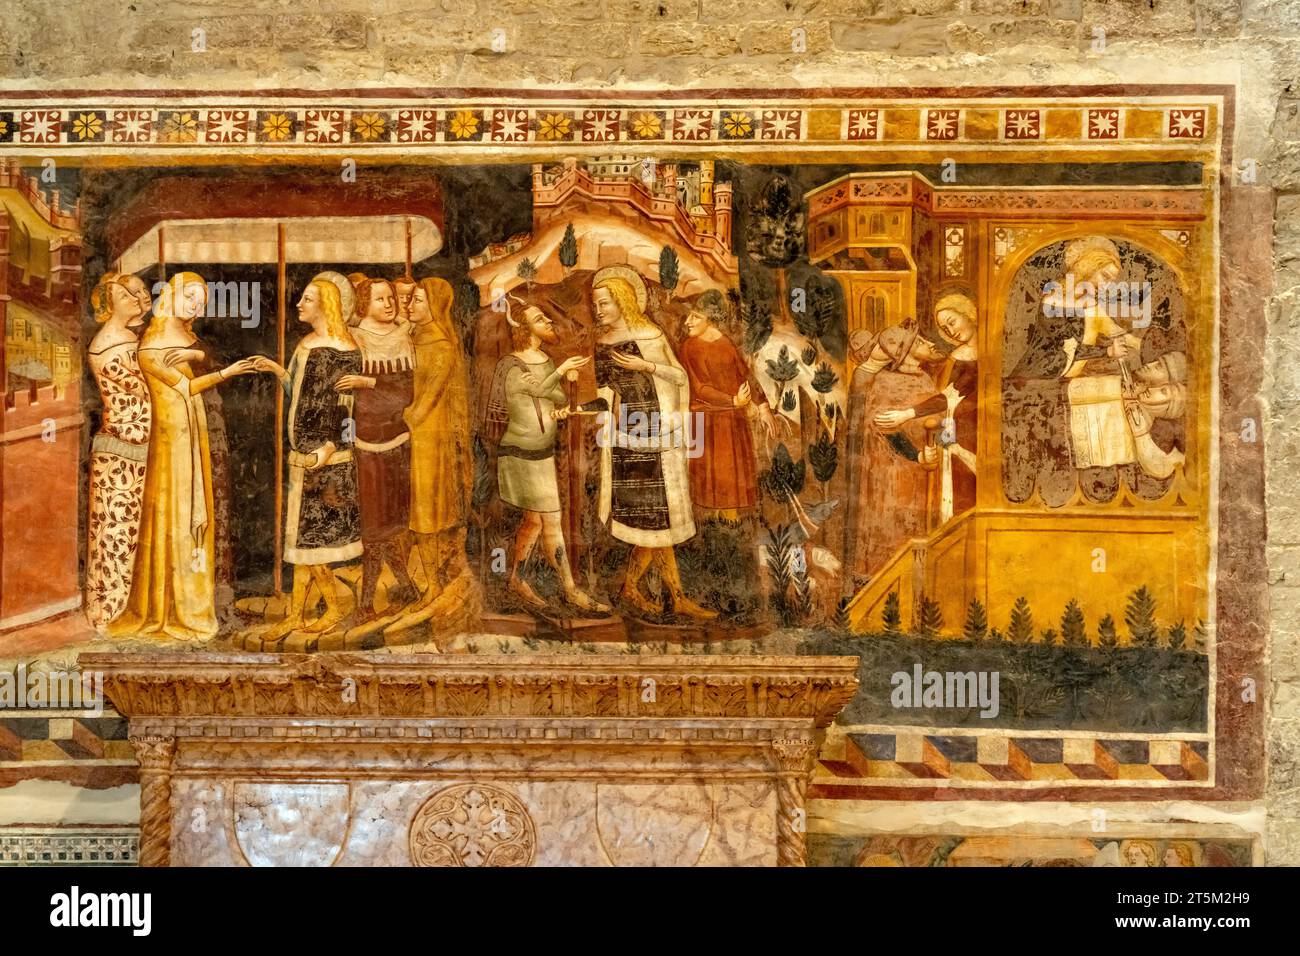 Fresken im Innenraum des Dom von Trient oder Kathedrale San Vigilio, Trient, Trentino, Italien, Europa |  Frescoes at the Trento Cathedral Cattedrale Stock Photo